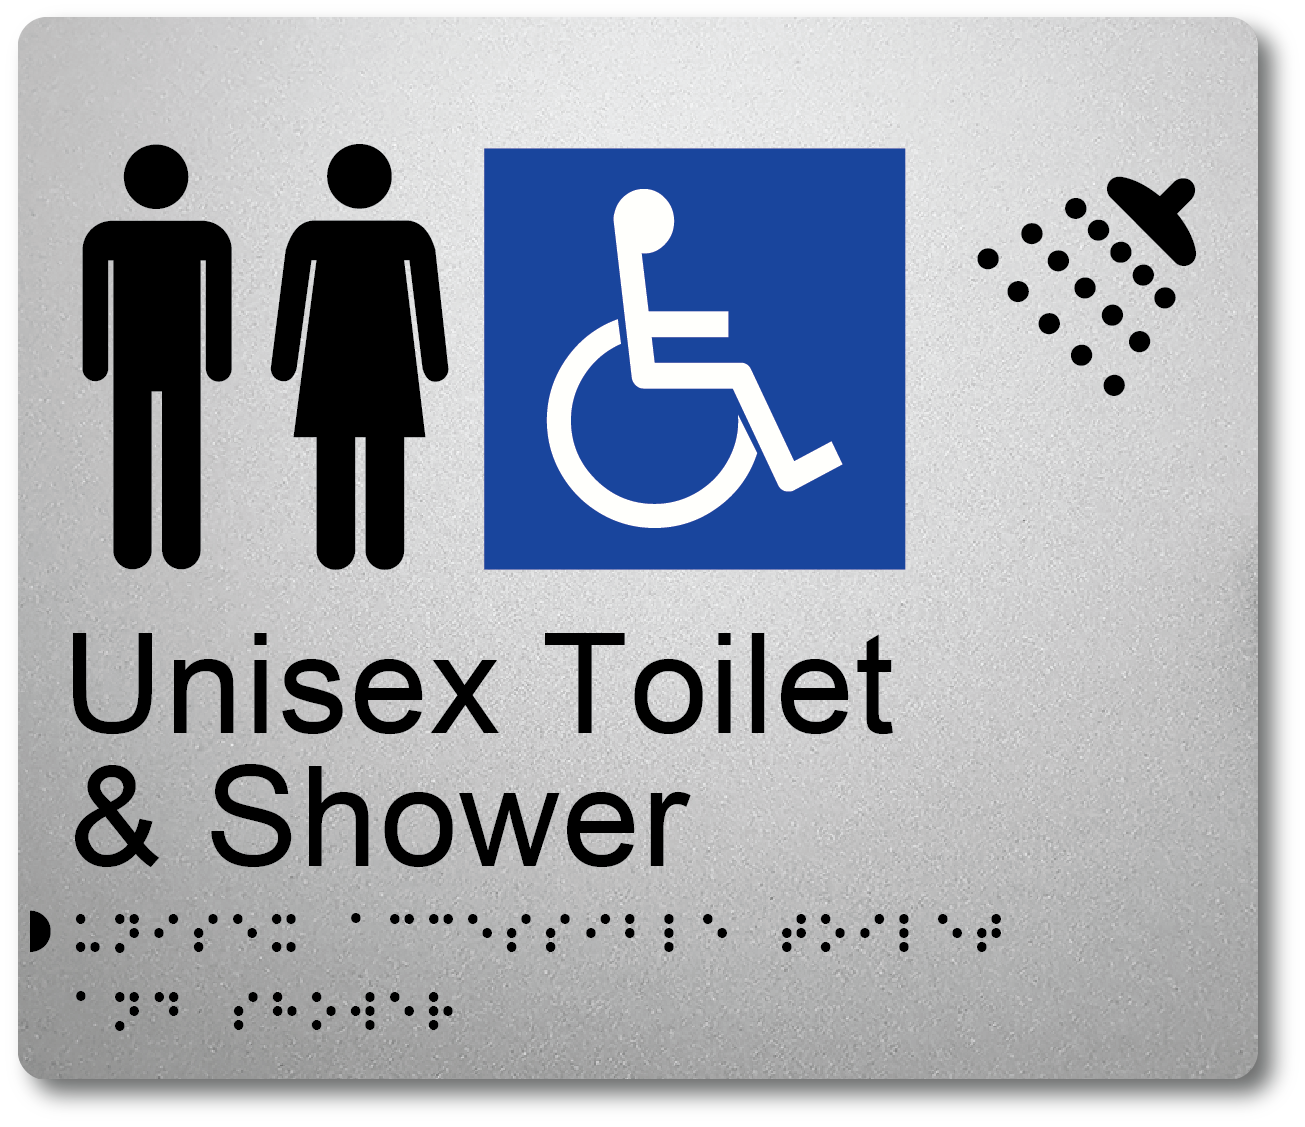 Unisex Toilet & Shower - Accessible